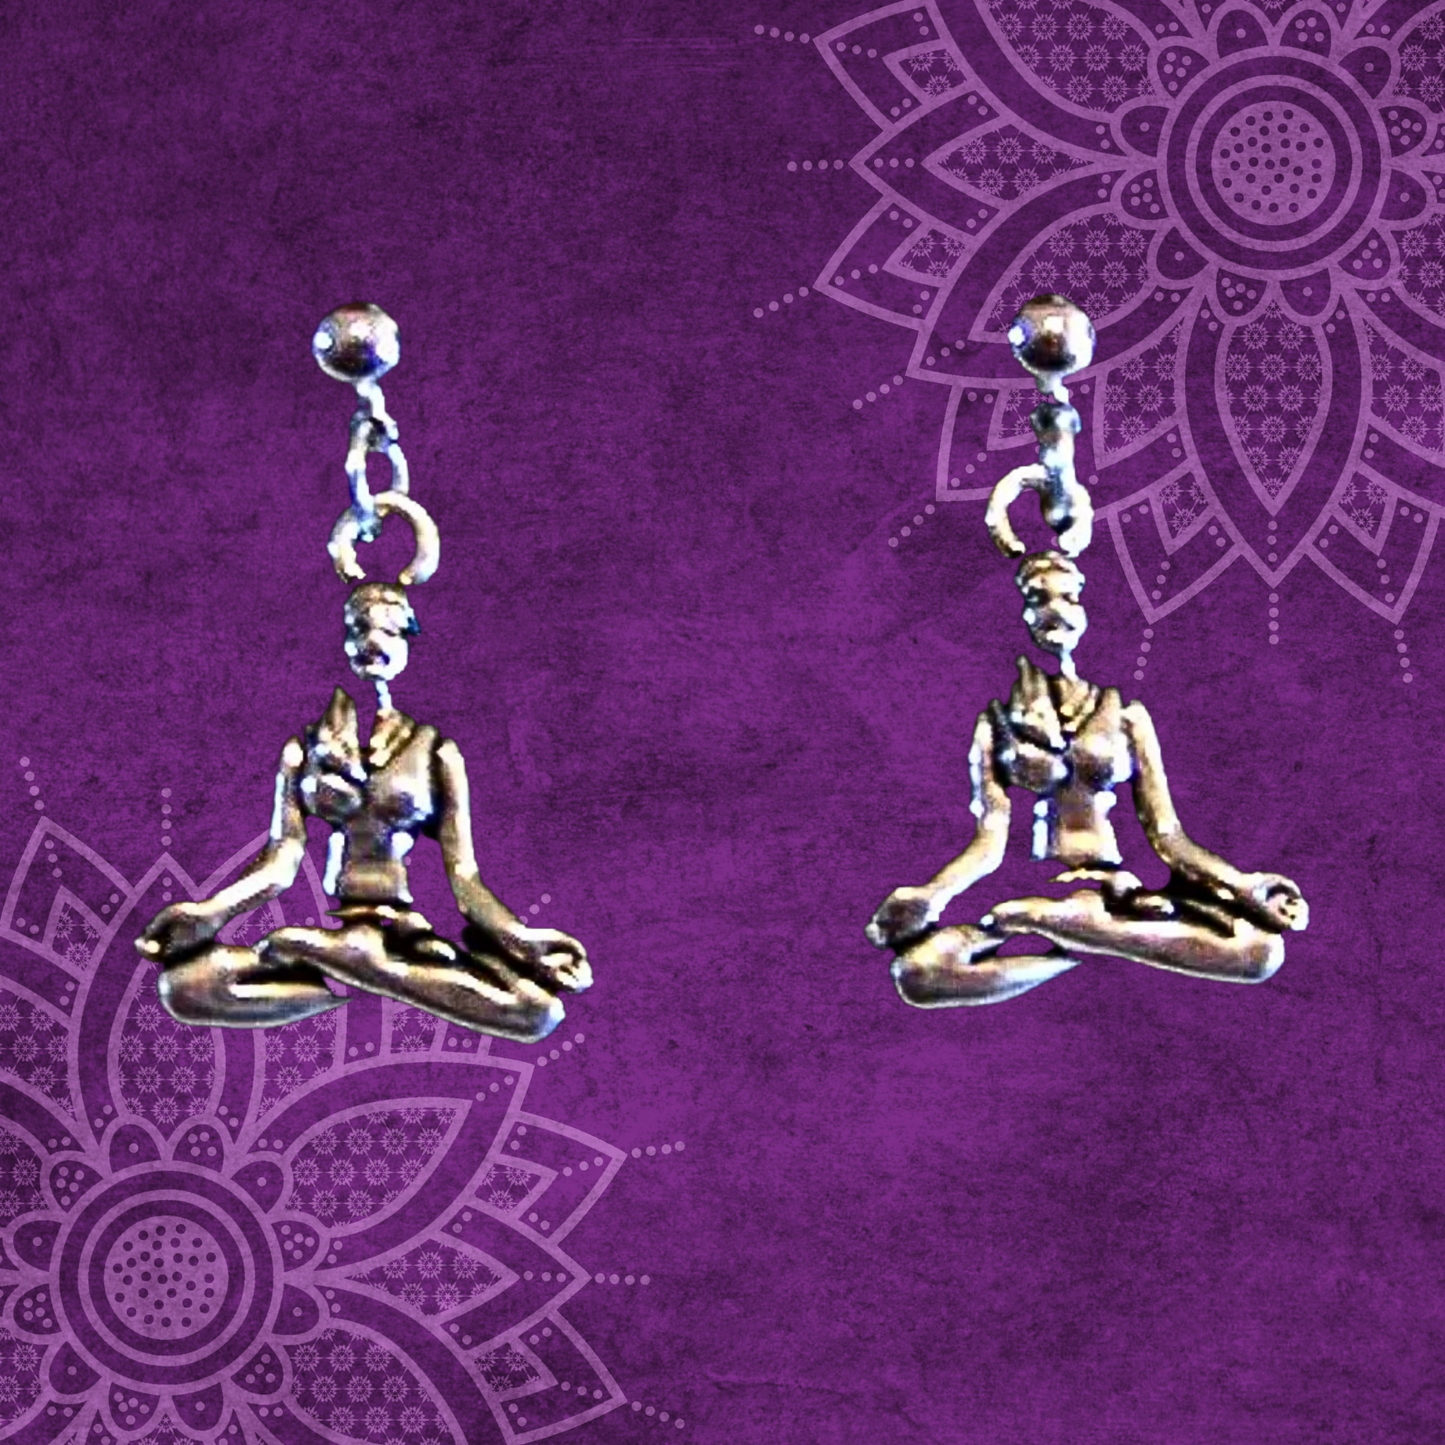 Sukhasana Yoga Pose Pendant Earrings